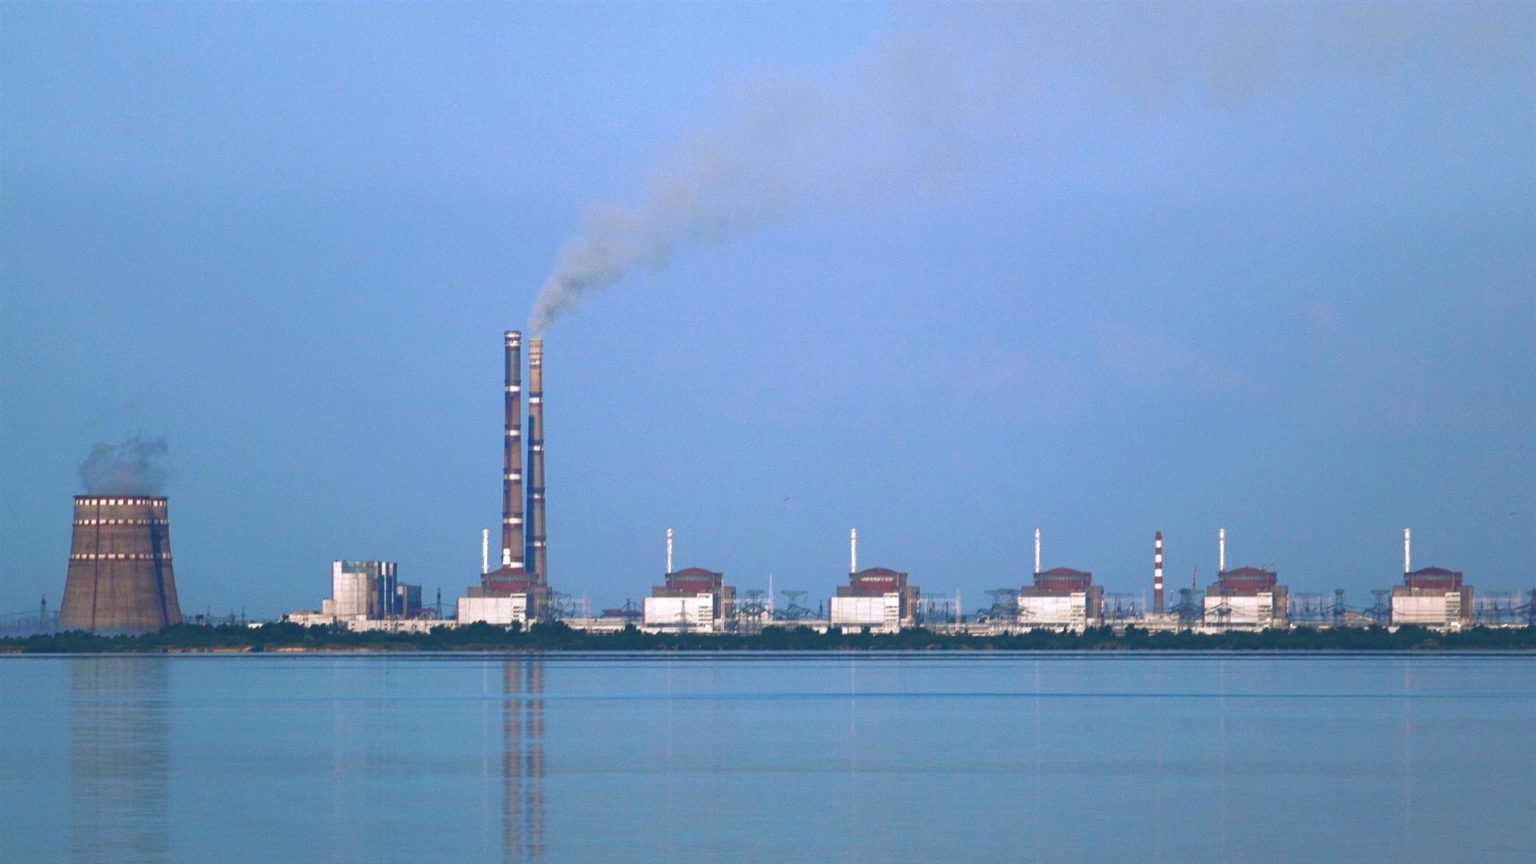 Ucrania confirma la reconexión parcial de la central nuclear de Zaporiyia a la red eléctrica